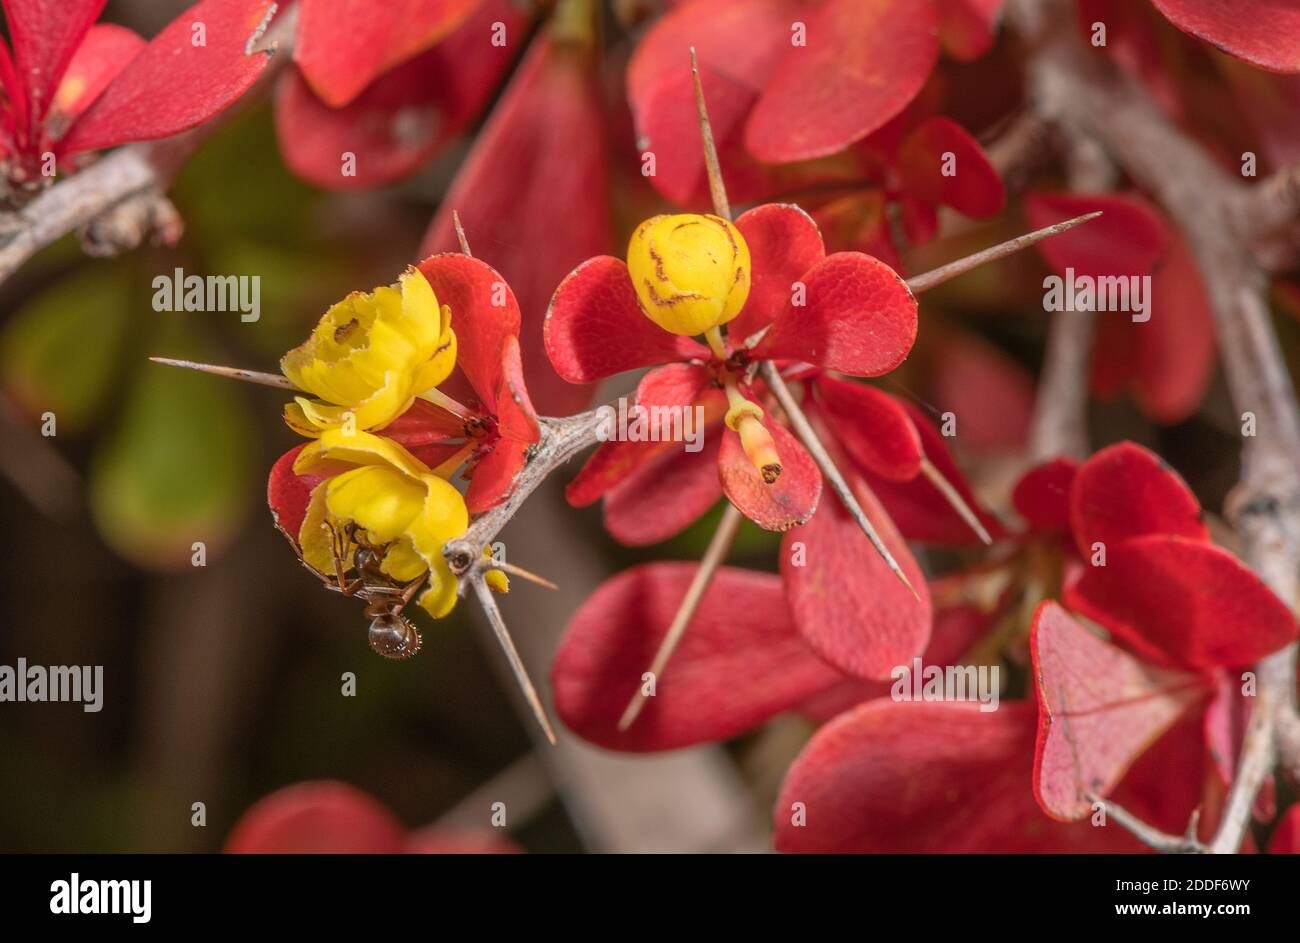 Flores y hojas otoñales de arándano japonés, Berberis thunbergii, con polinizadores de hormigas. Dorset. Foto de stock